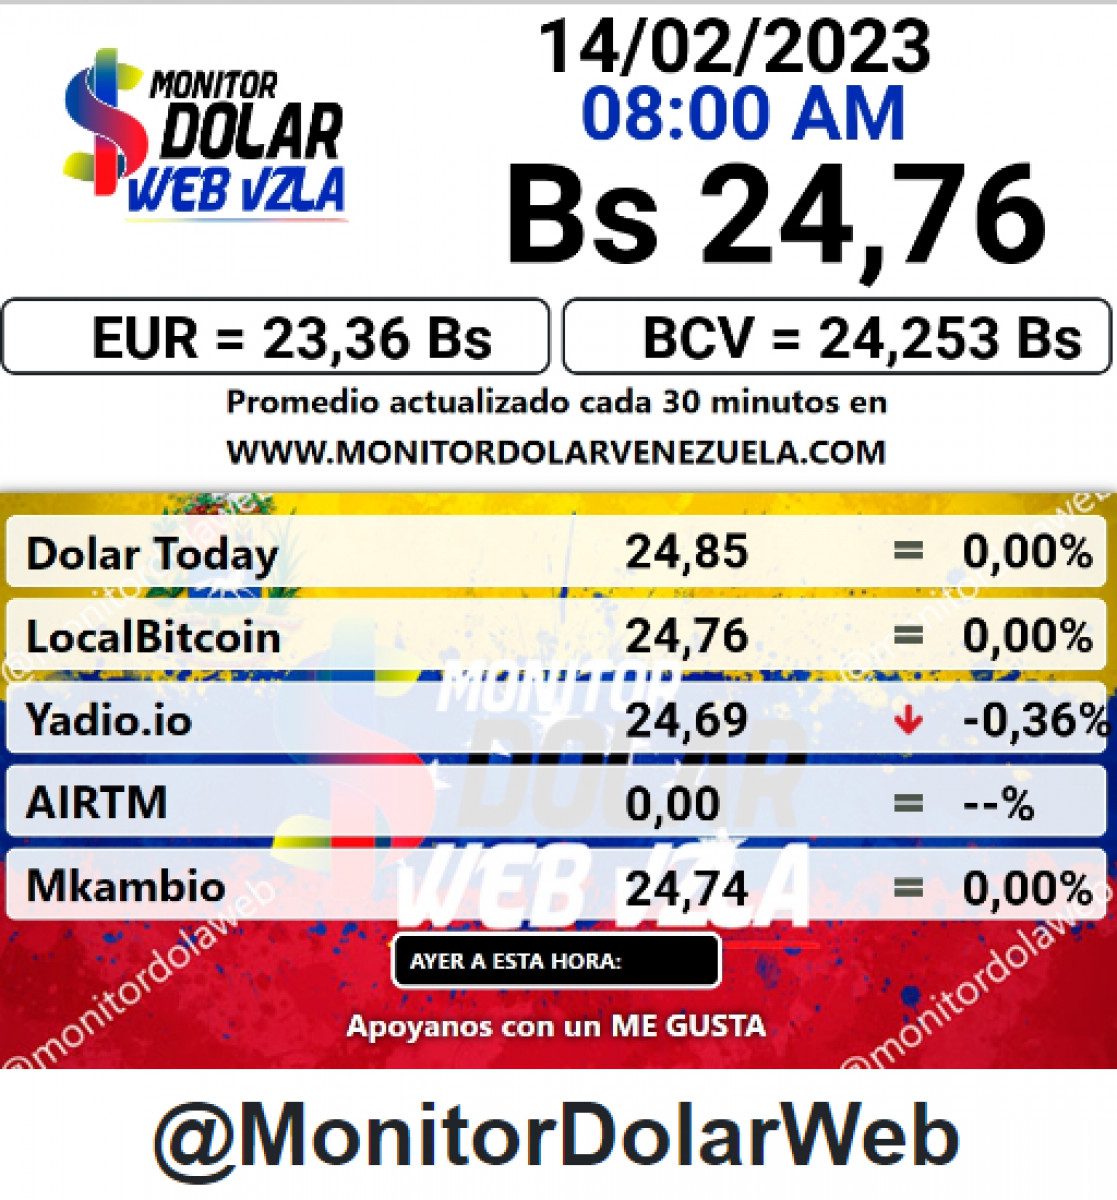 dolartoday en venezuela precio del dolar este martes 14 de febrero de 2023 laverdaddemonagas.com monitor 1